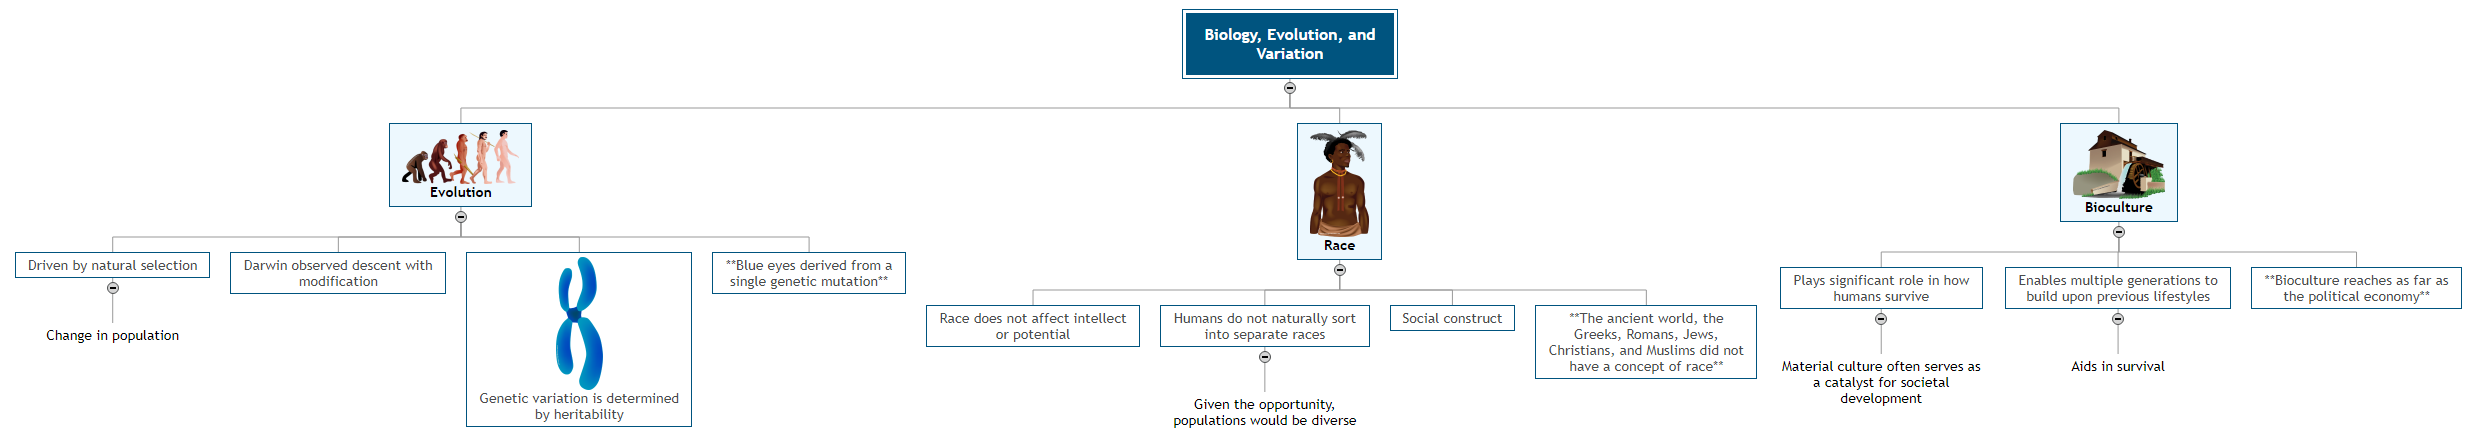 Biology, Evolution, and Variation Mind Map